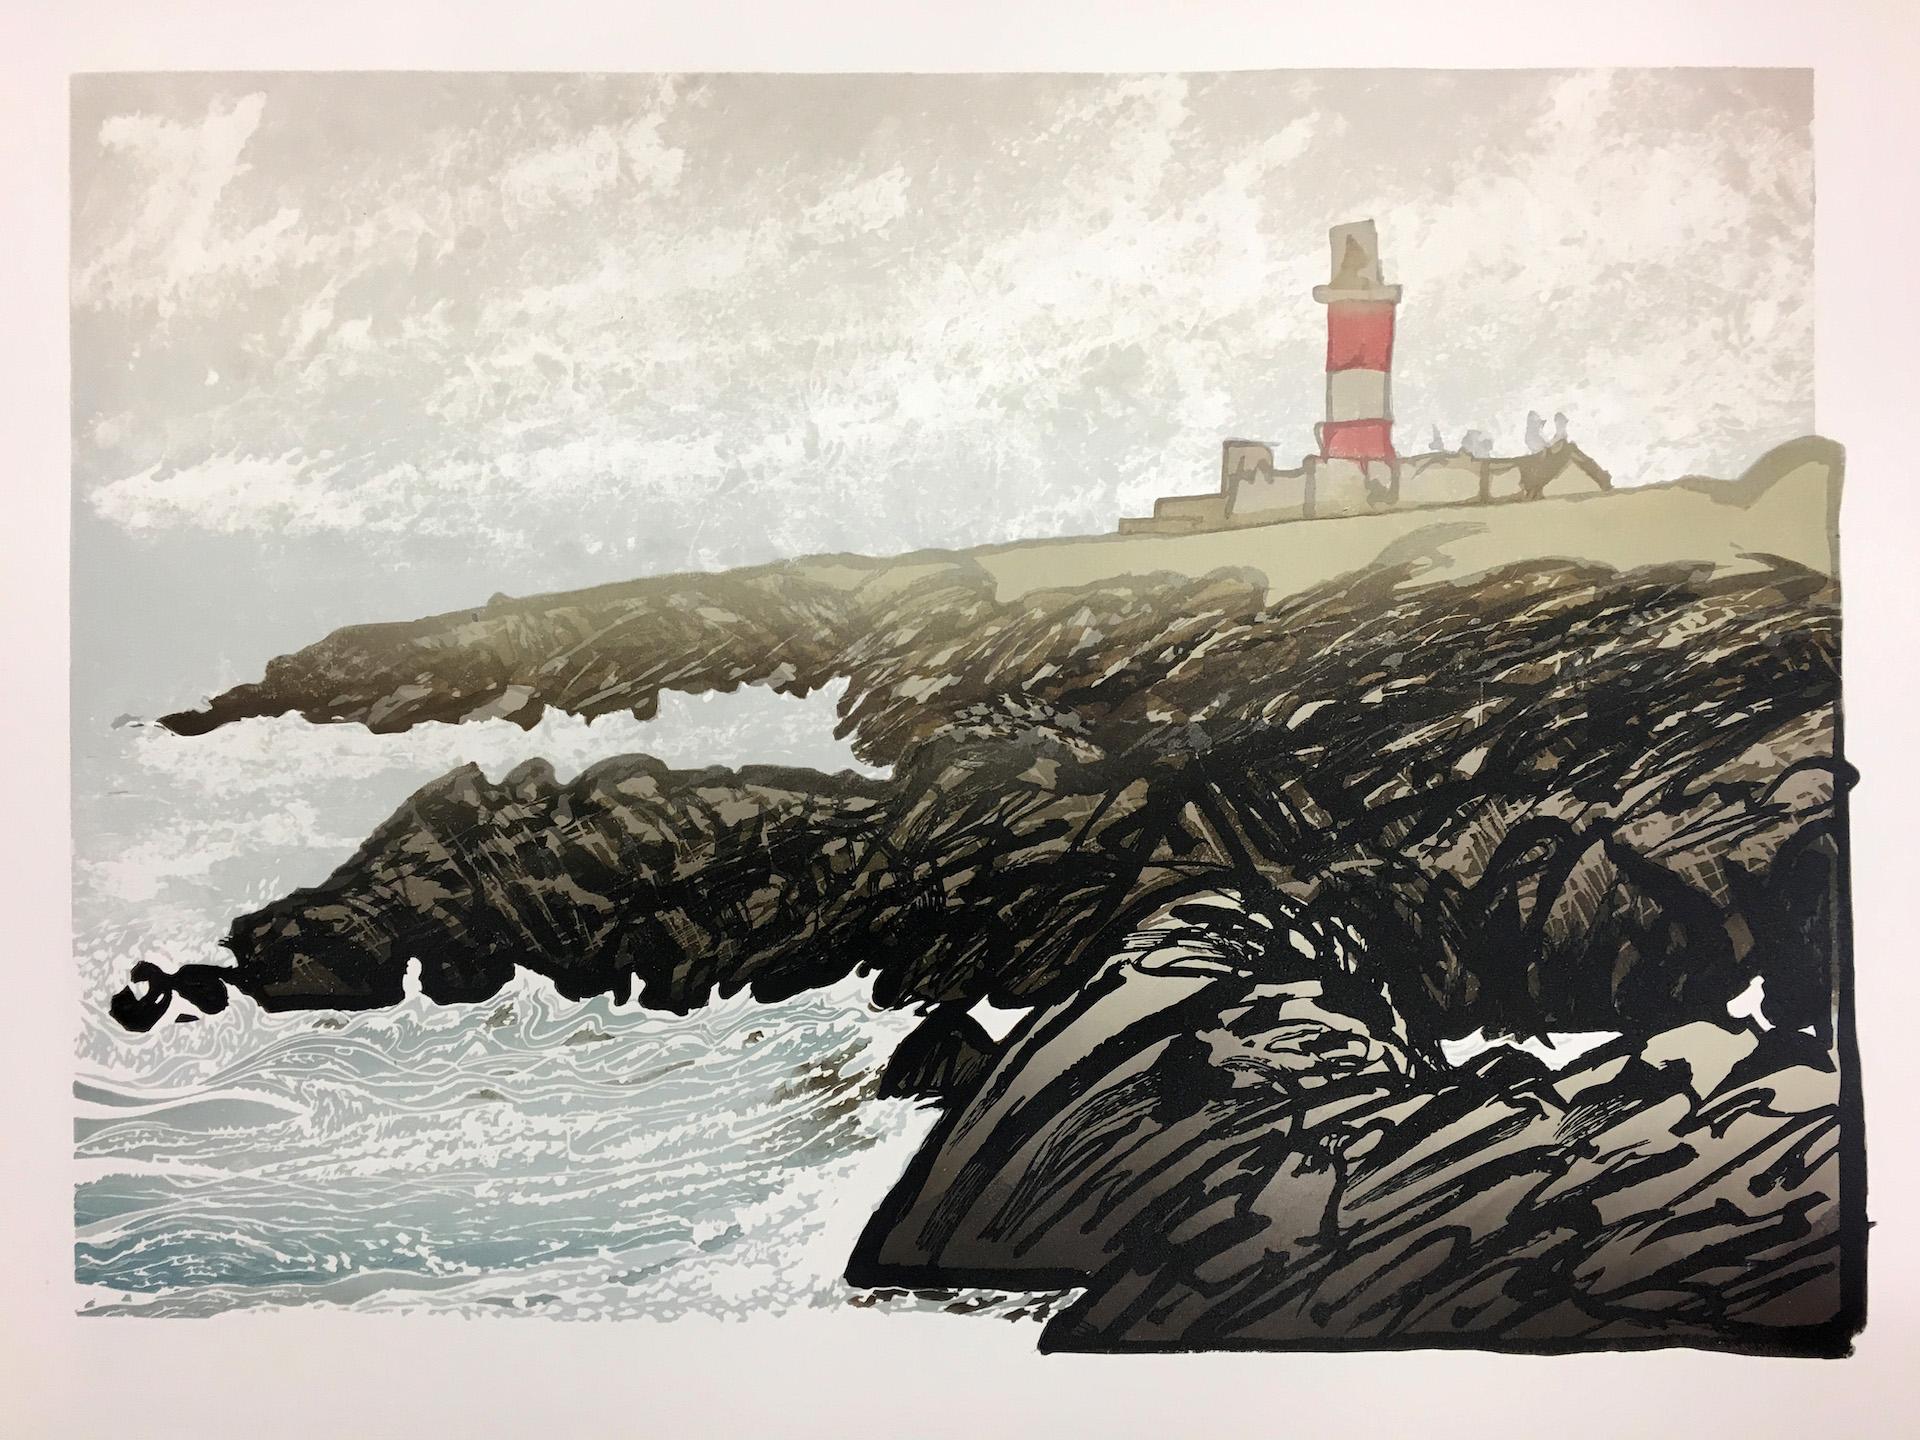 Ian Phillips, Lighthouse, Impression de paysage marin en édition limitée, Art côtier, Littoral